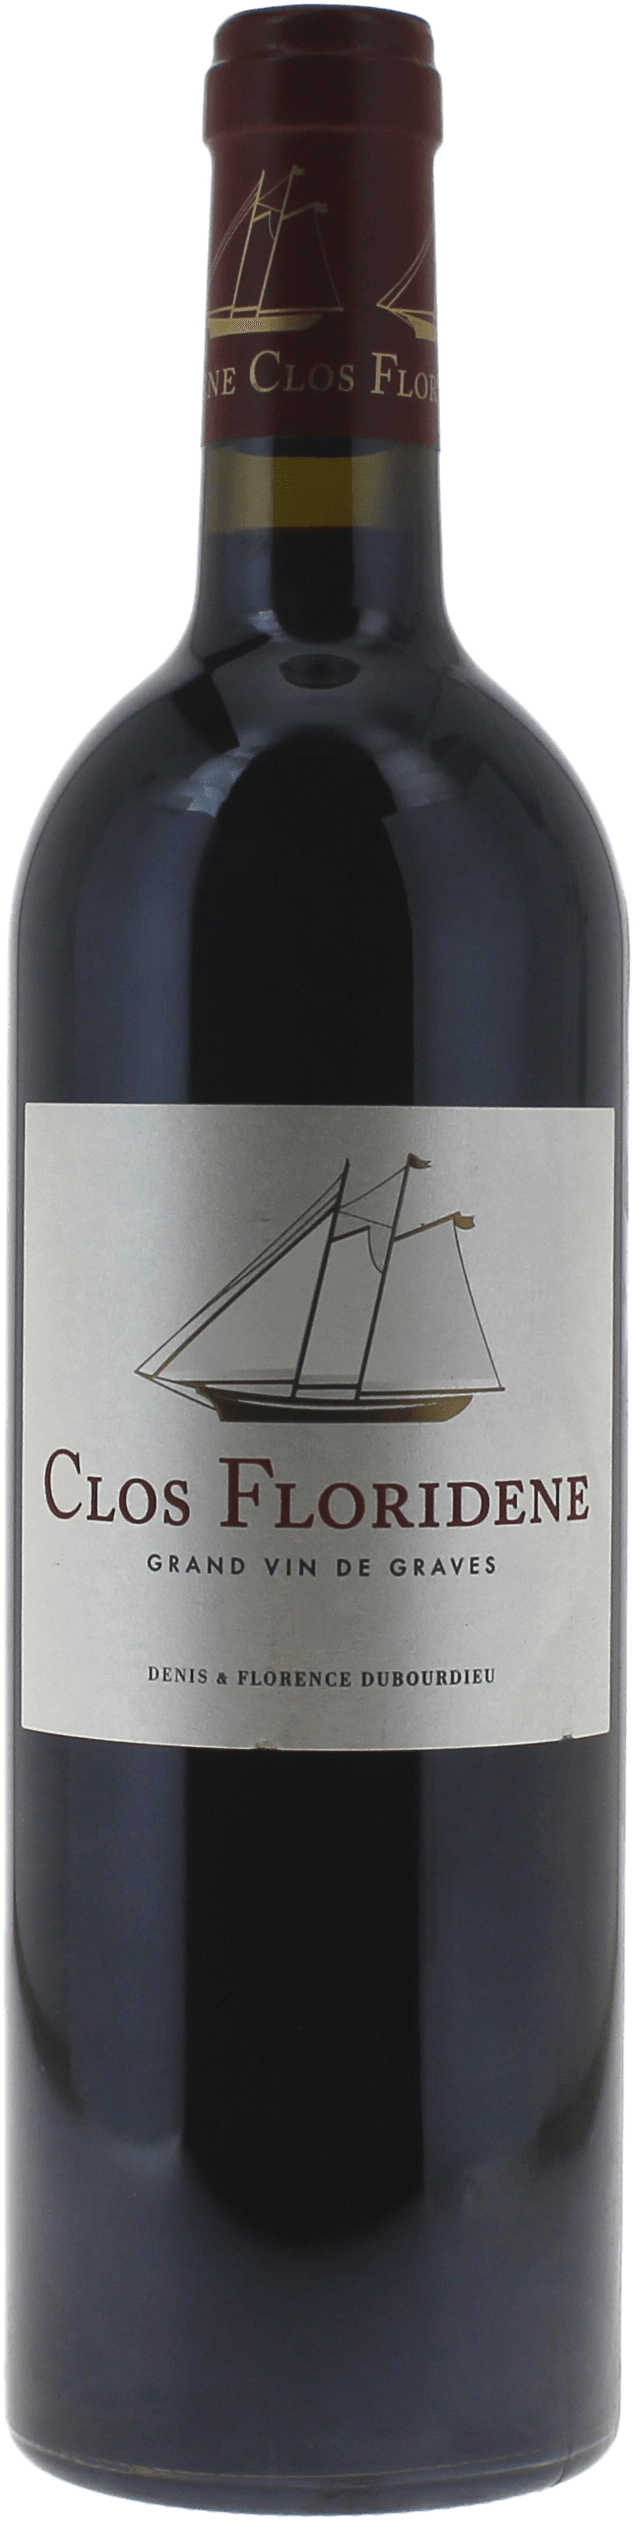 Clos floridne rouge 2020  Graves, Bordeaux rouge